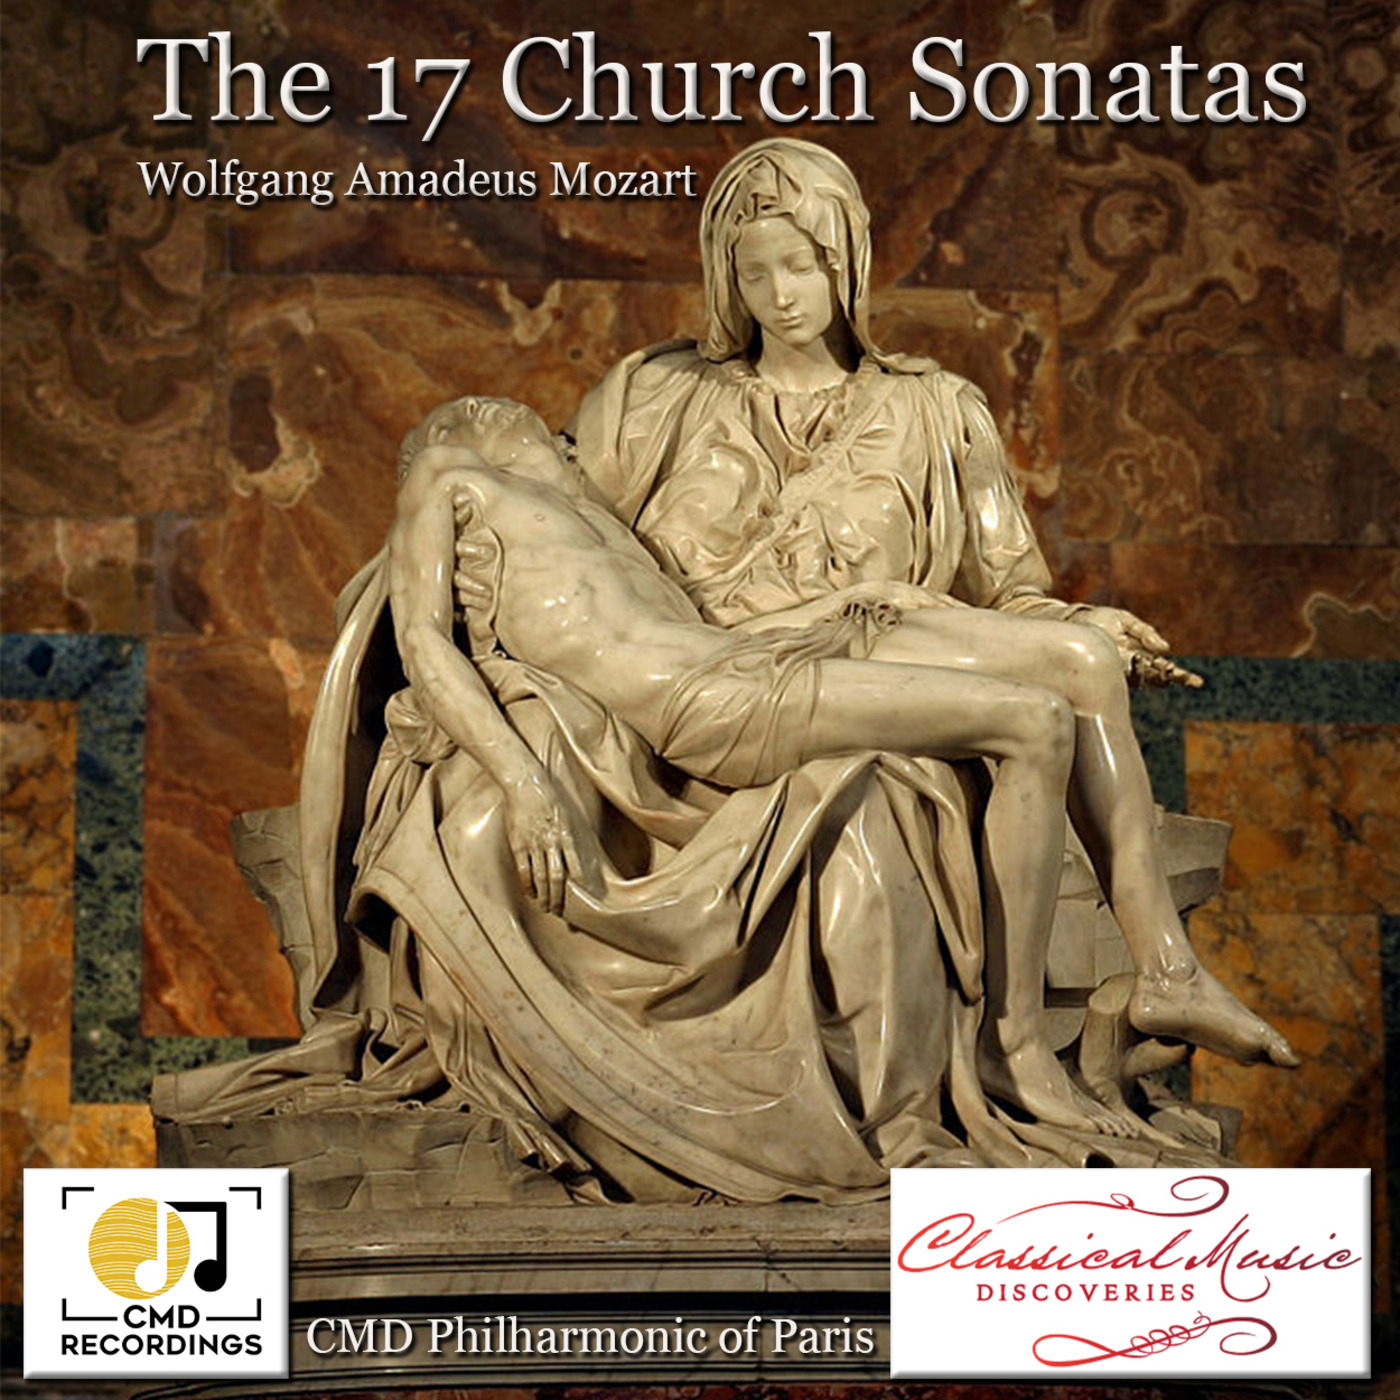 Episode 125: 13125 Mozart: The 17 Church Sonatas